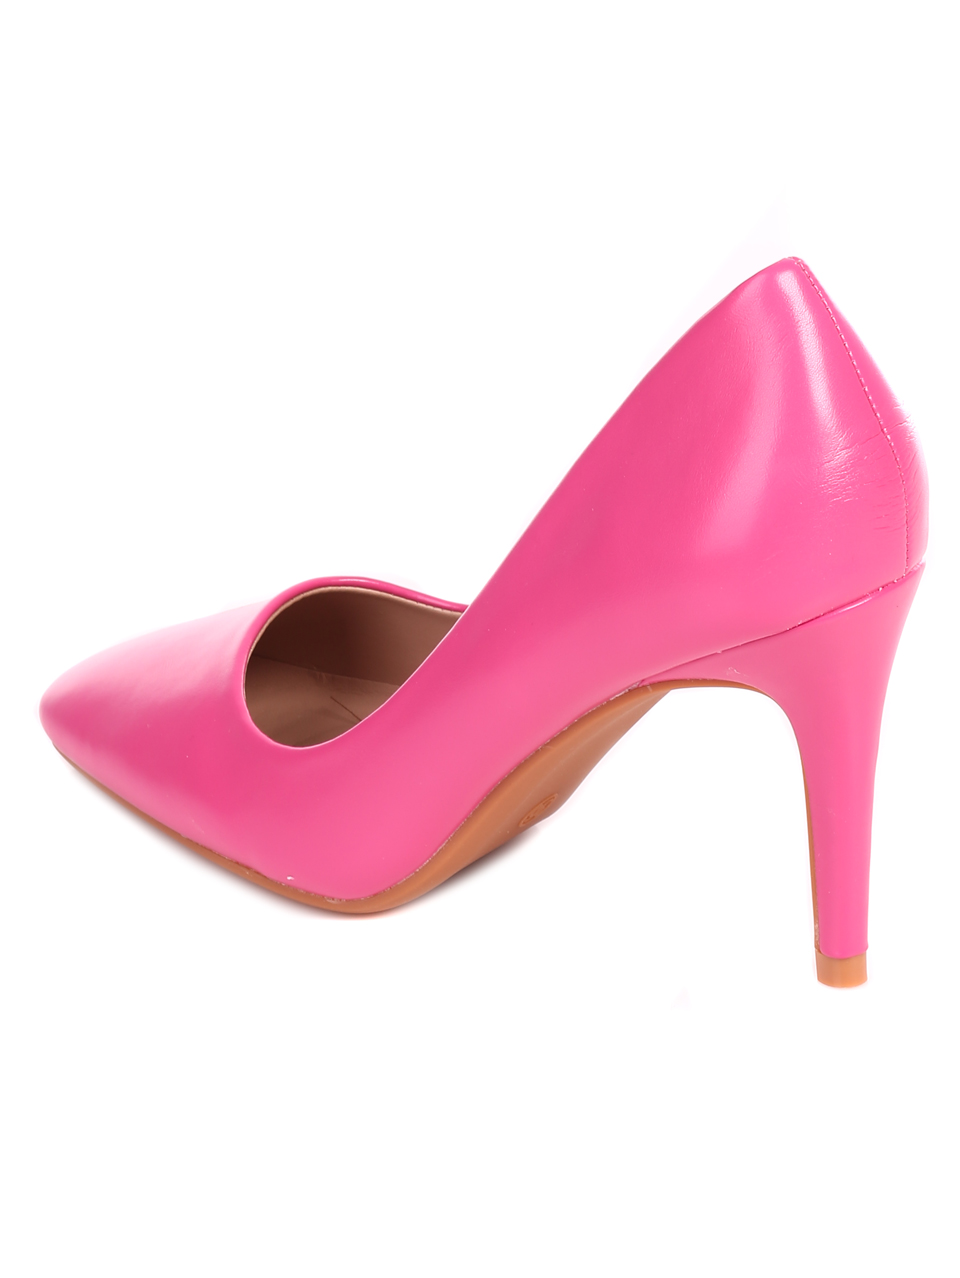 Елегантни дамски обувки на ток в розово 3R-22196 fuchsia